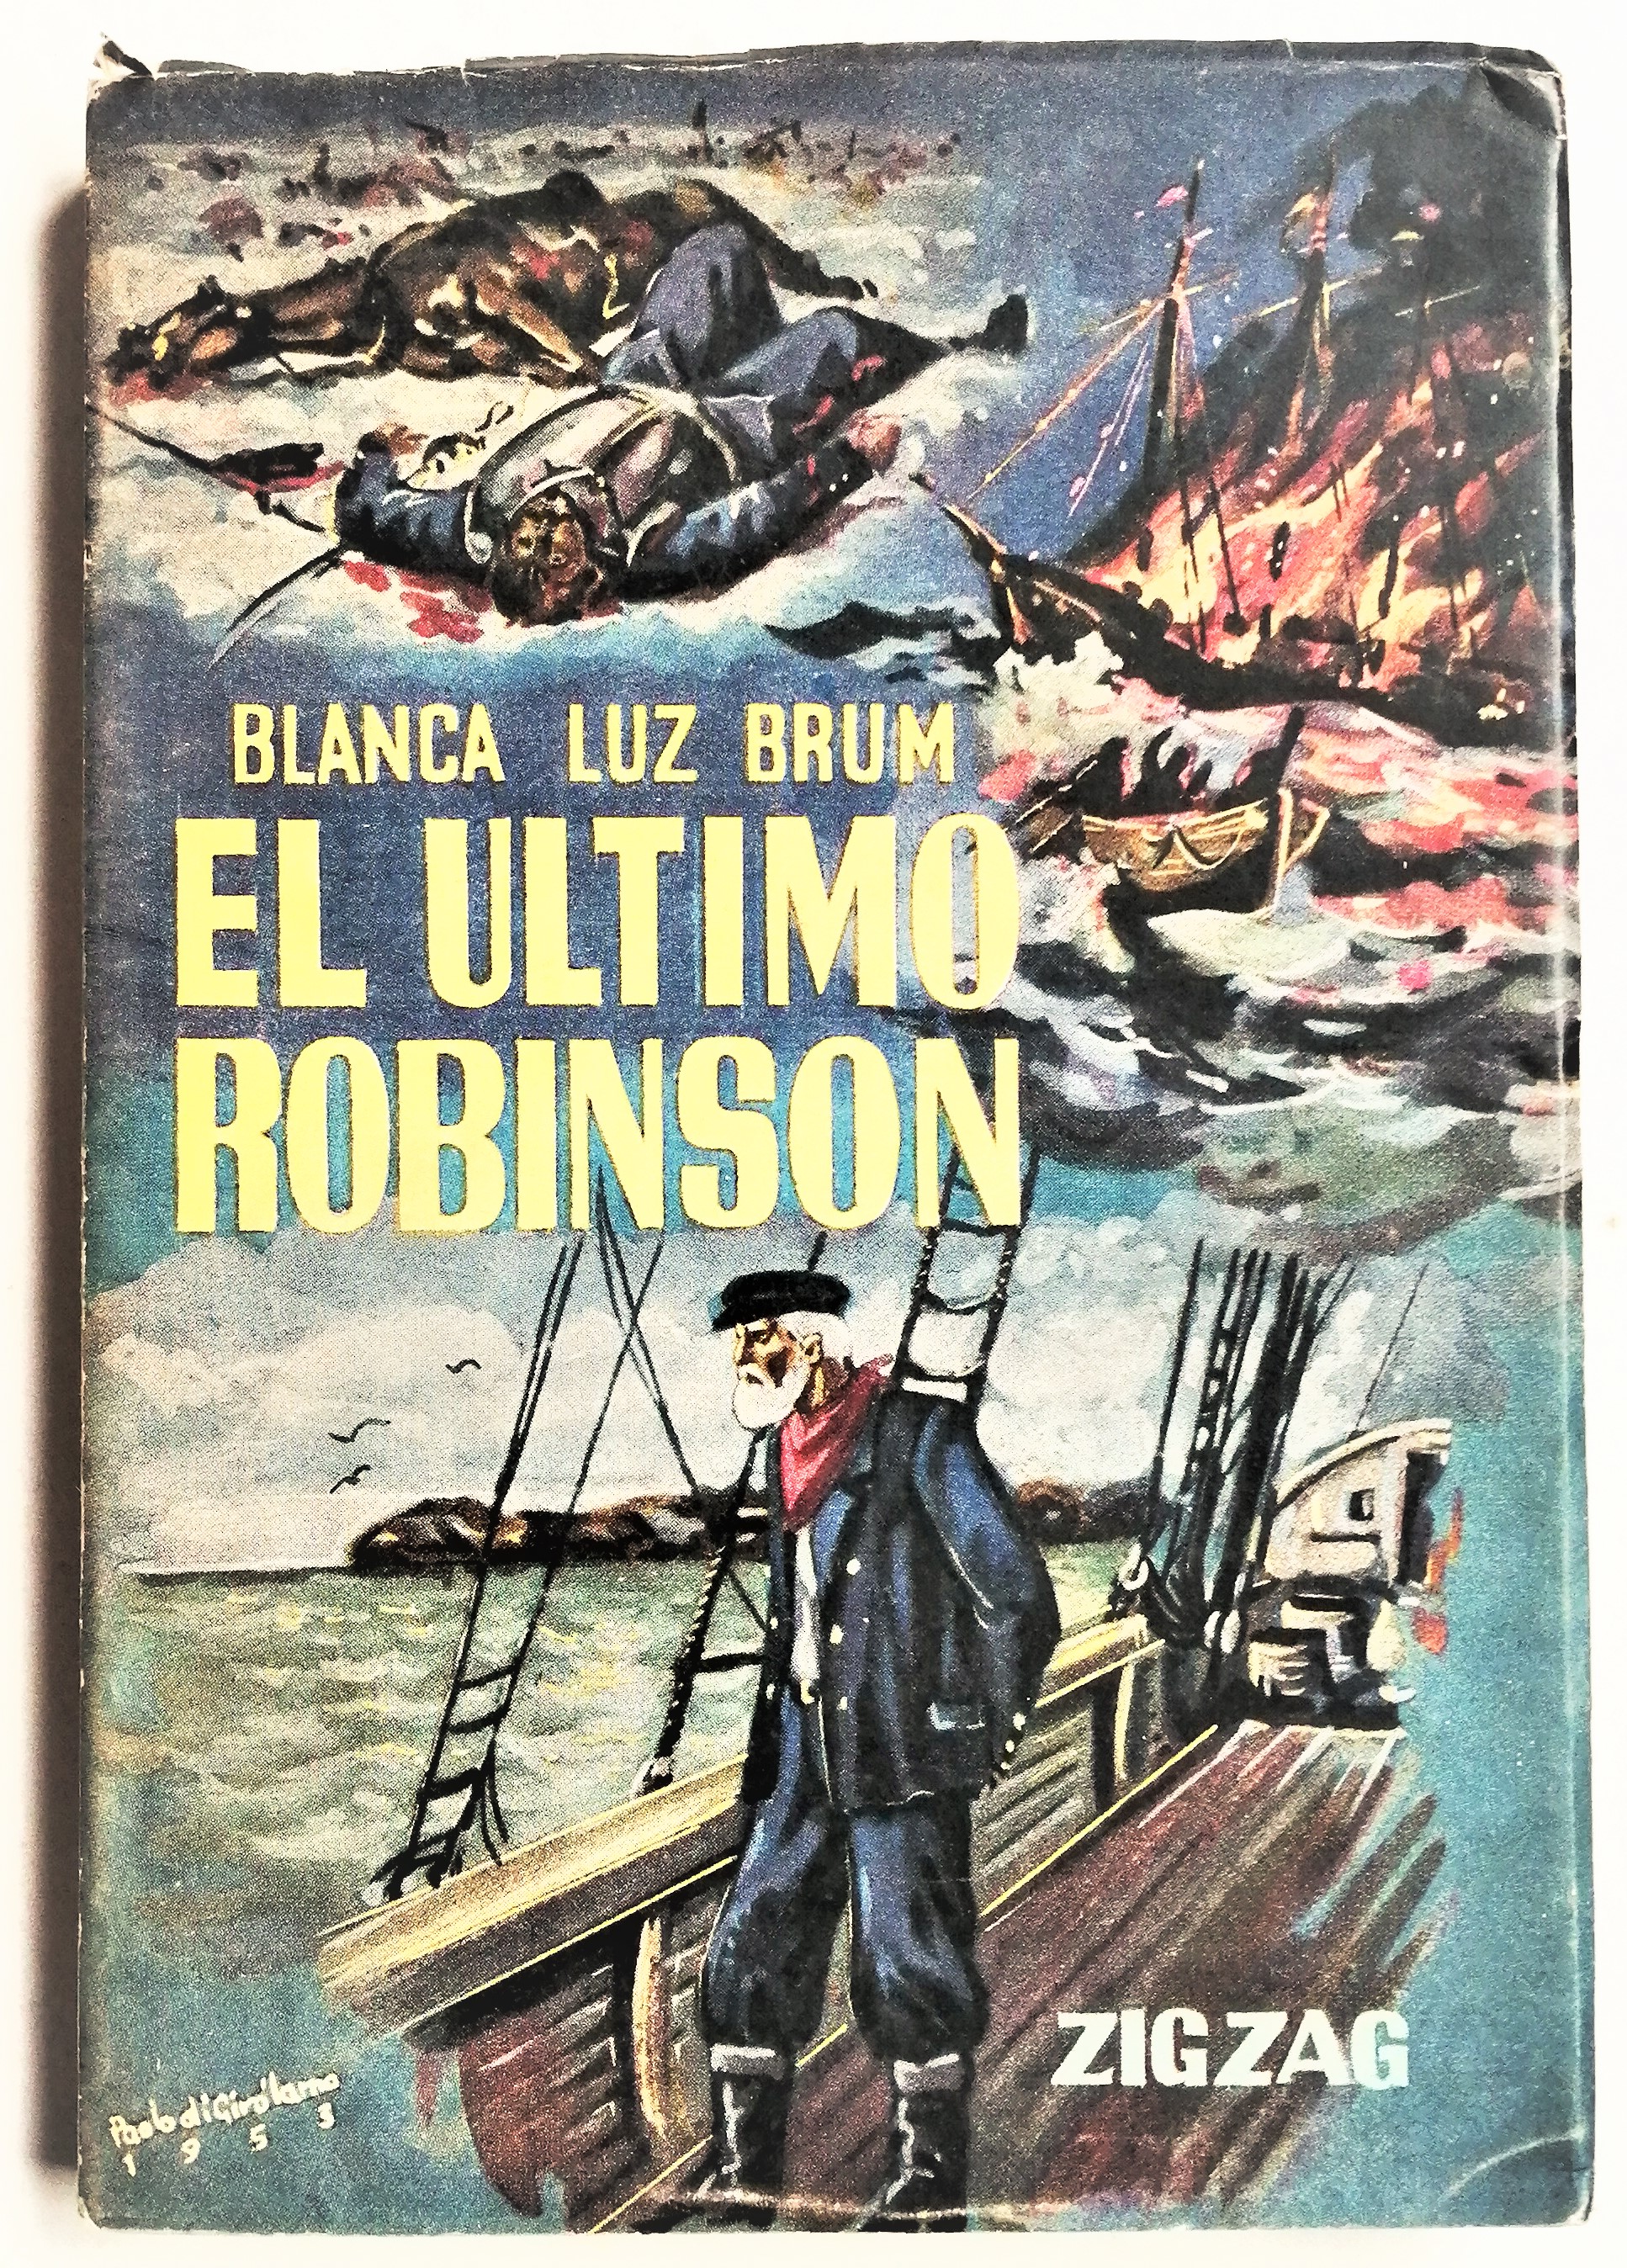 Blanca Luz Brum - El último Robinson